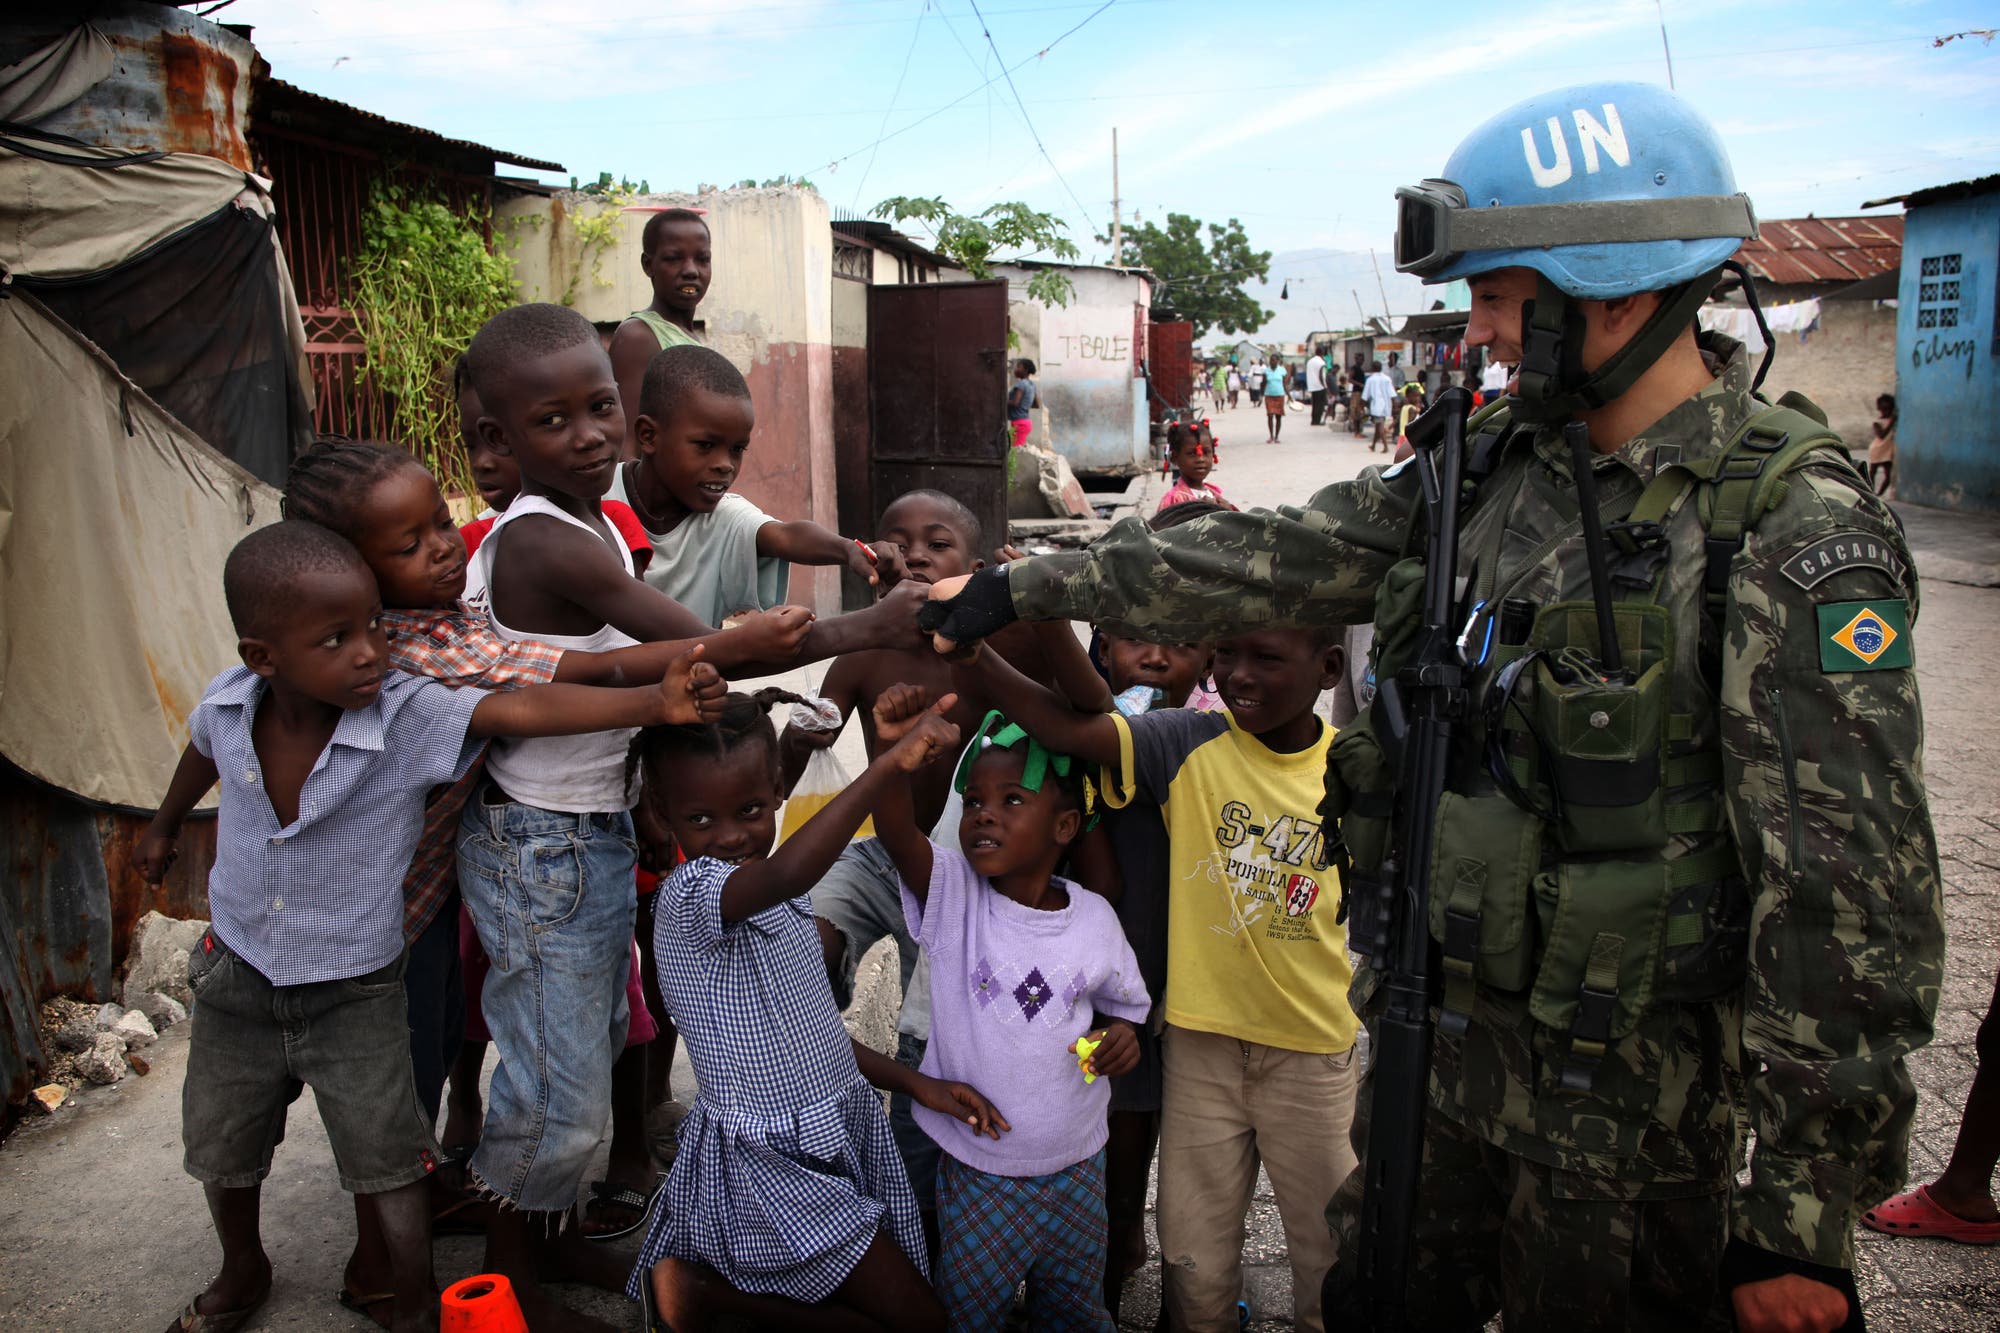 UN-Blauhelmsoldat im Jahr 2010 in Haiti